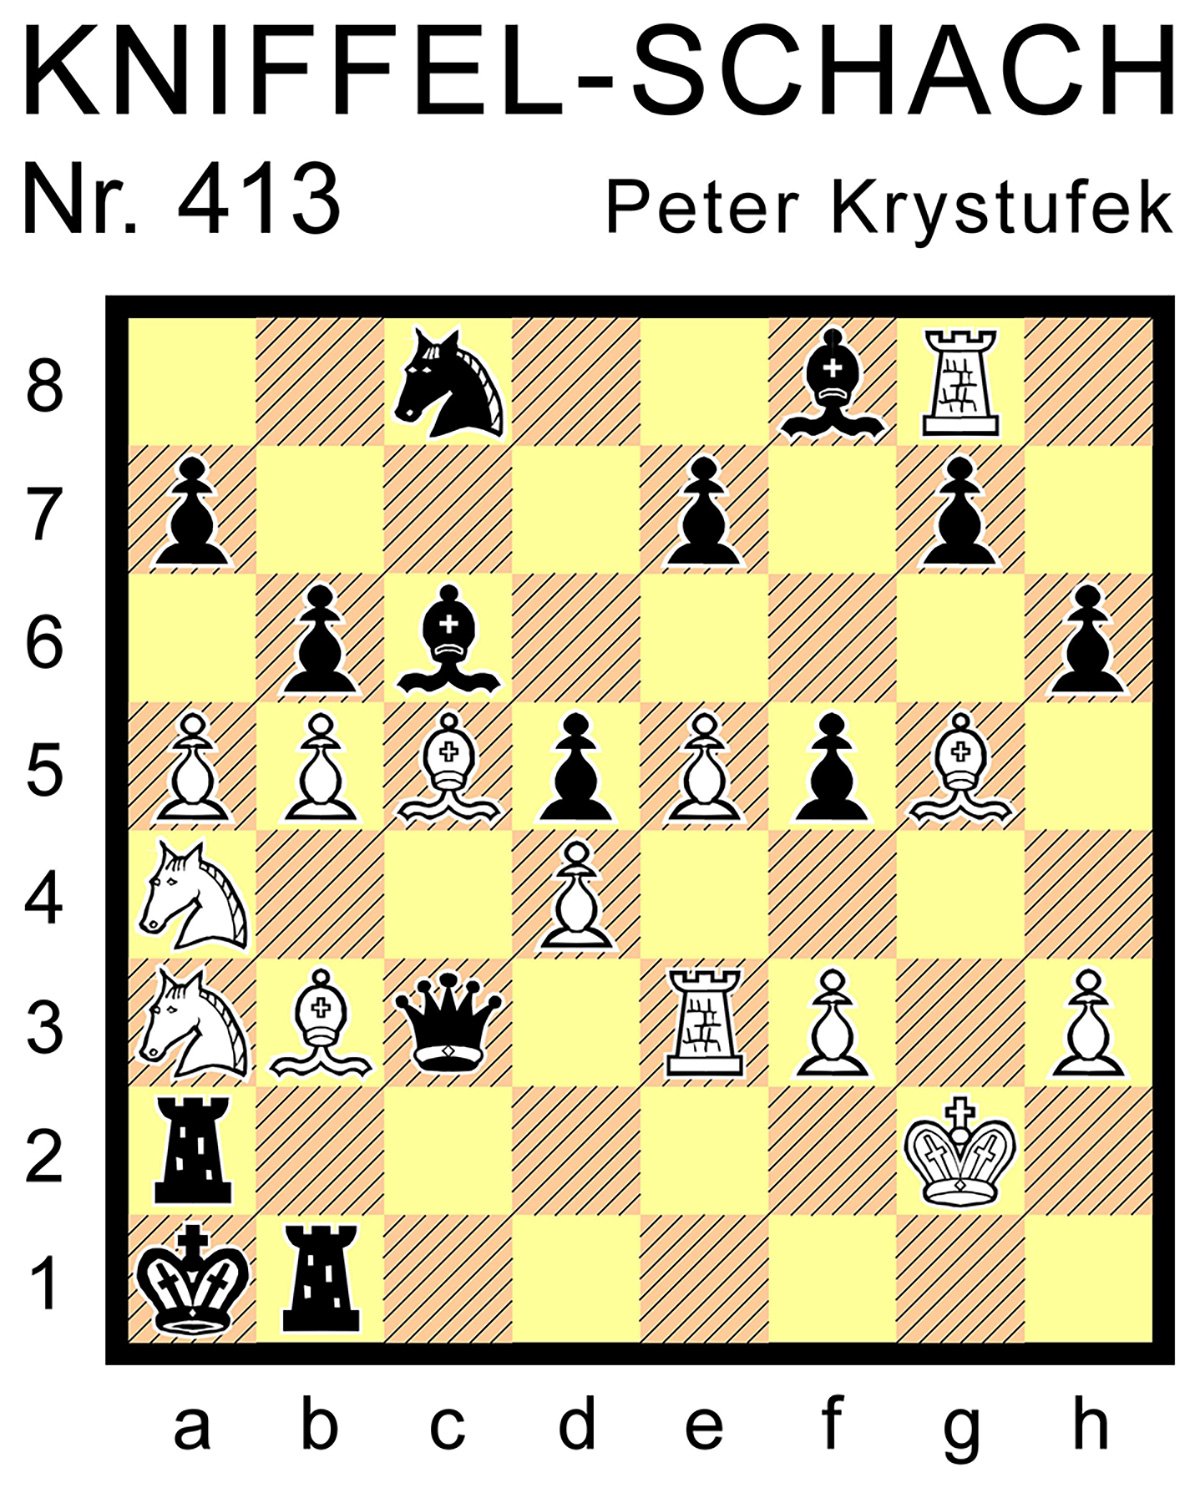 Kniffel-Schach Nr. 413